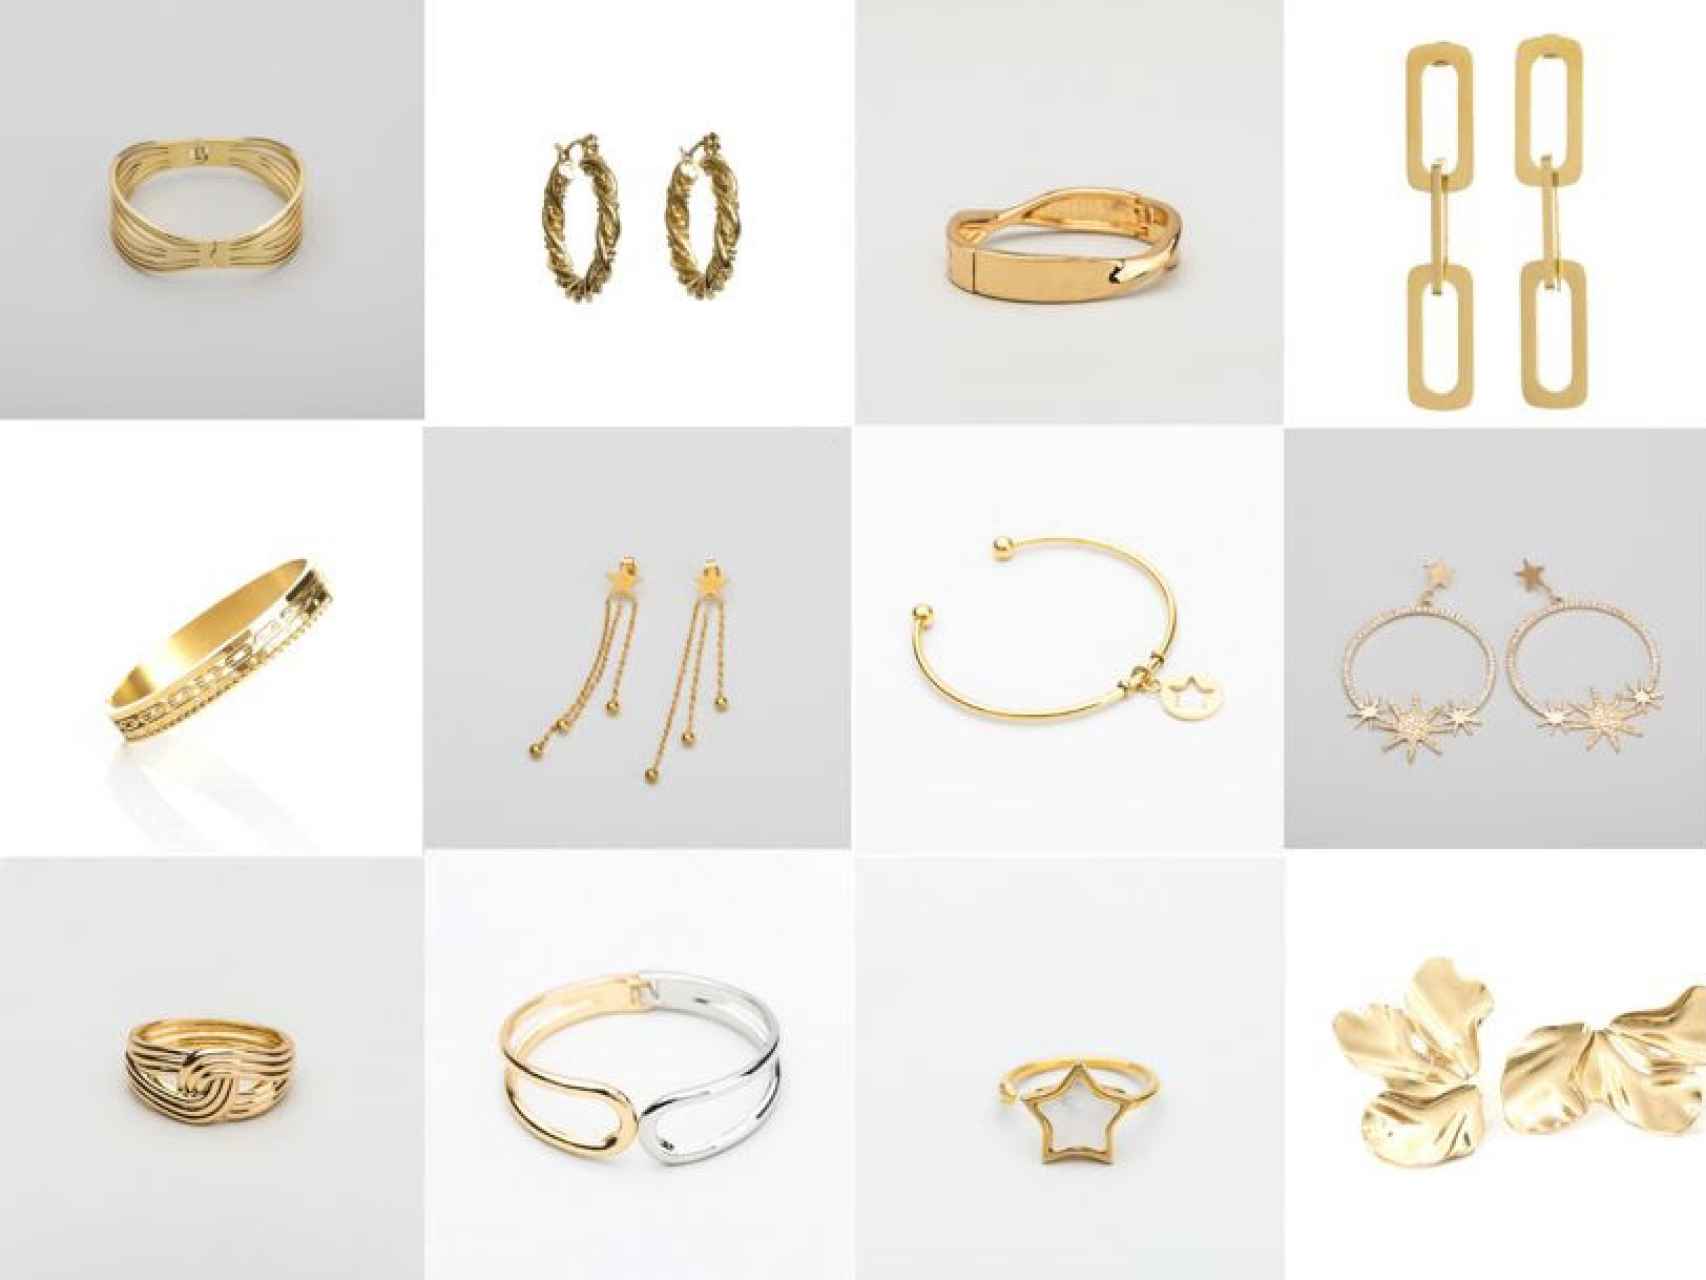 Estas son algunas de las joyas doradas que propone Alexah Jewelry en su catálogo.